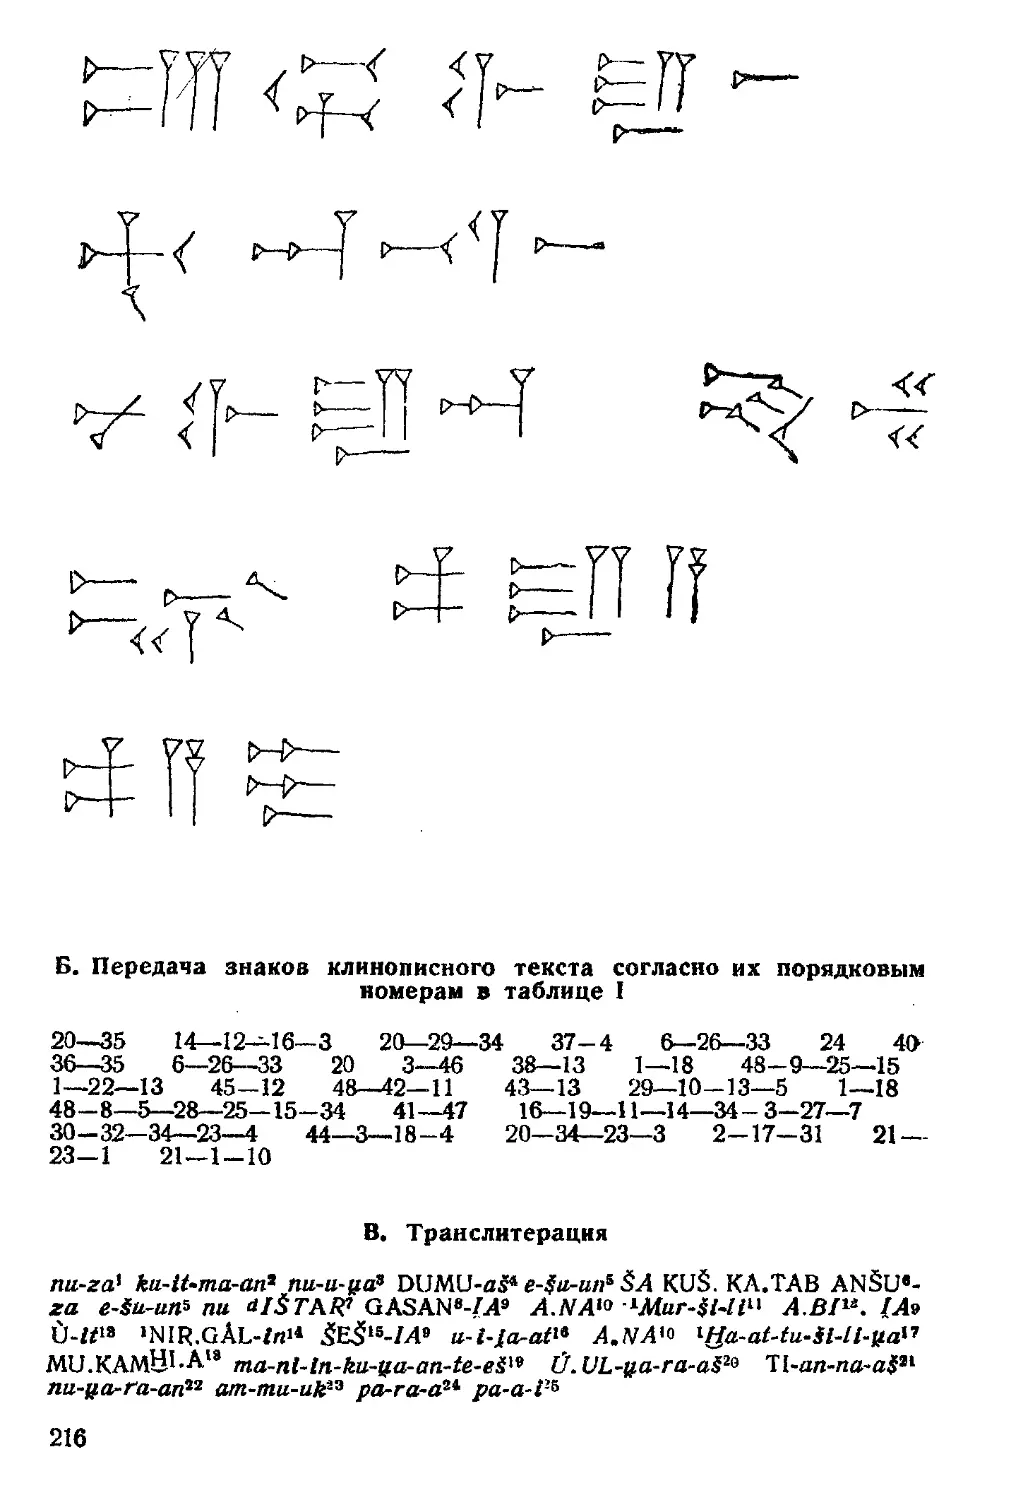 ﻿Б. Передача знаков клинописного текста согласно их порядковым номерам в таблице 1
﻿В. Транслитерация